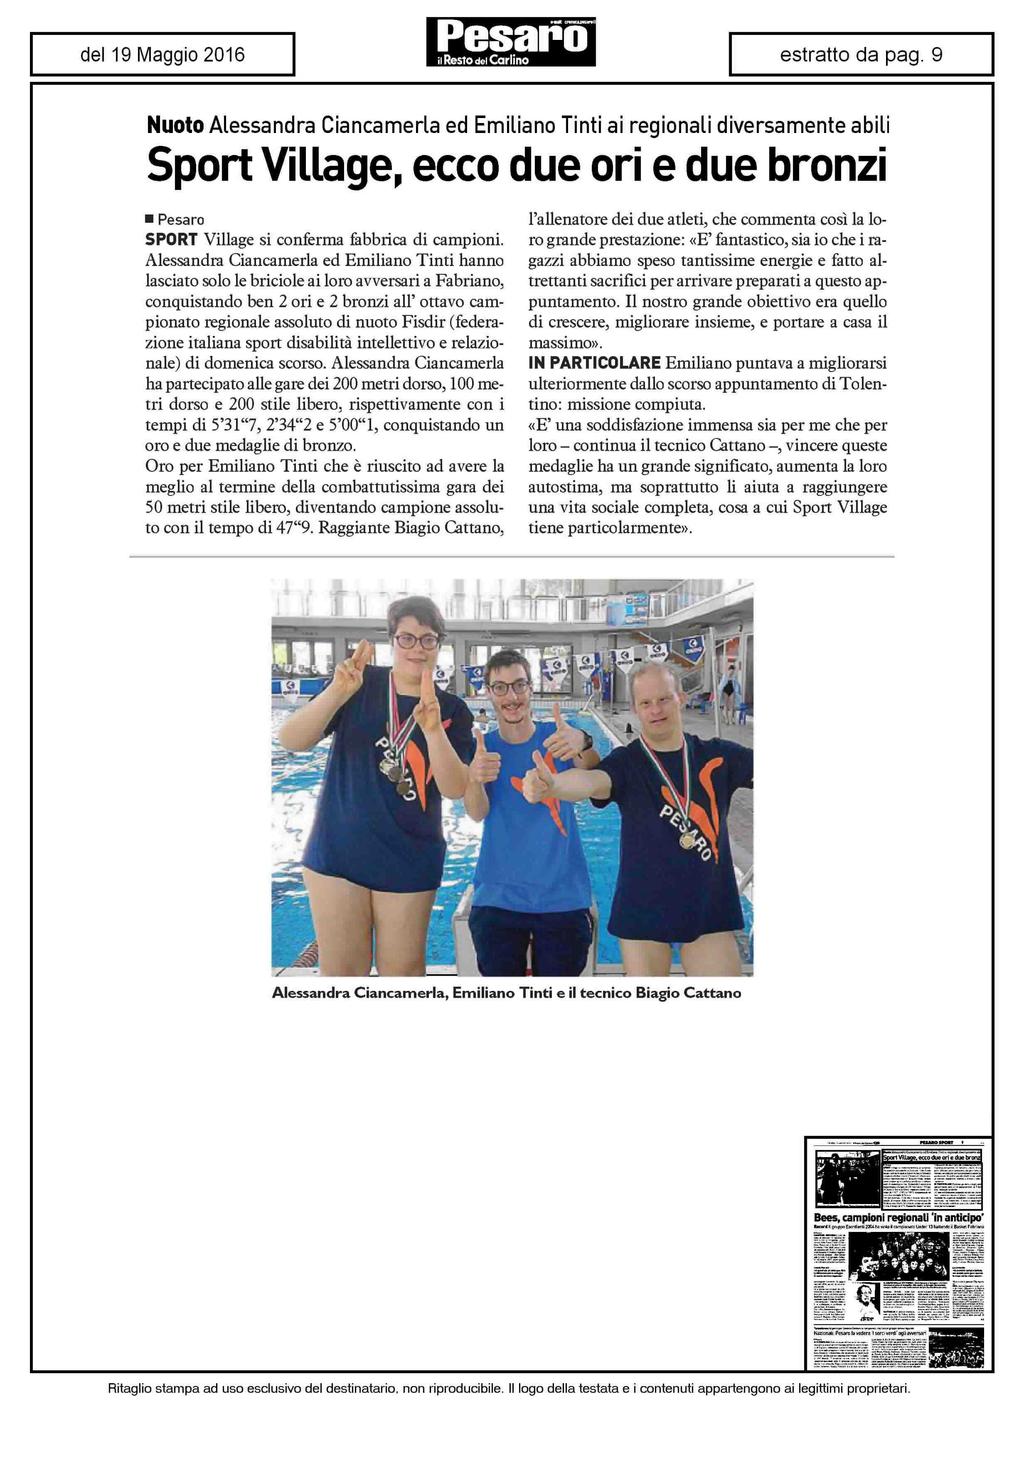 Nuoto Alessandra Ciancamerla ed Emiliano Tinti ai regionali diversamente abili Sport Village, ecco due ori e due bronzi Pesaro SPORT Village si conferma fabbrica di campioni.